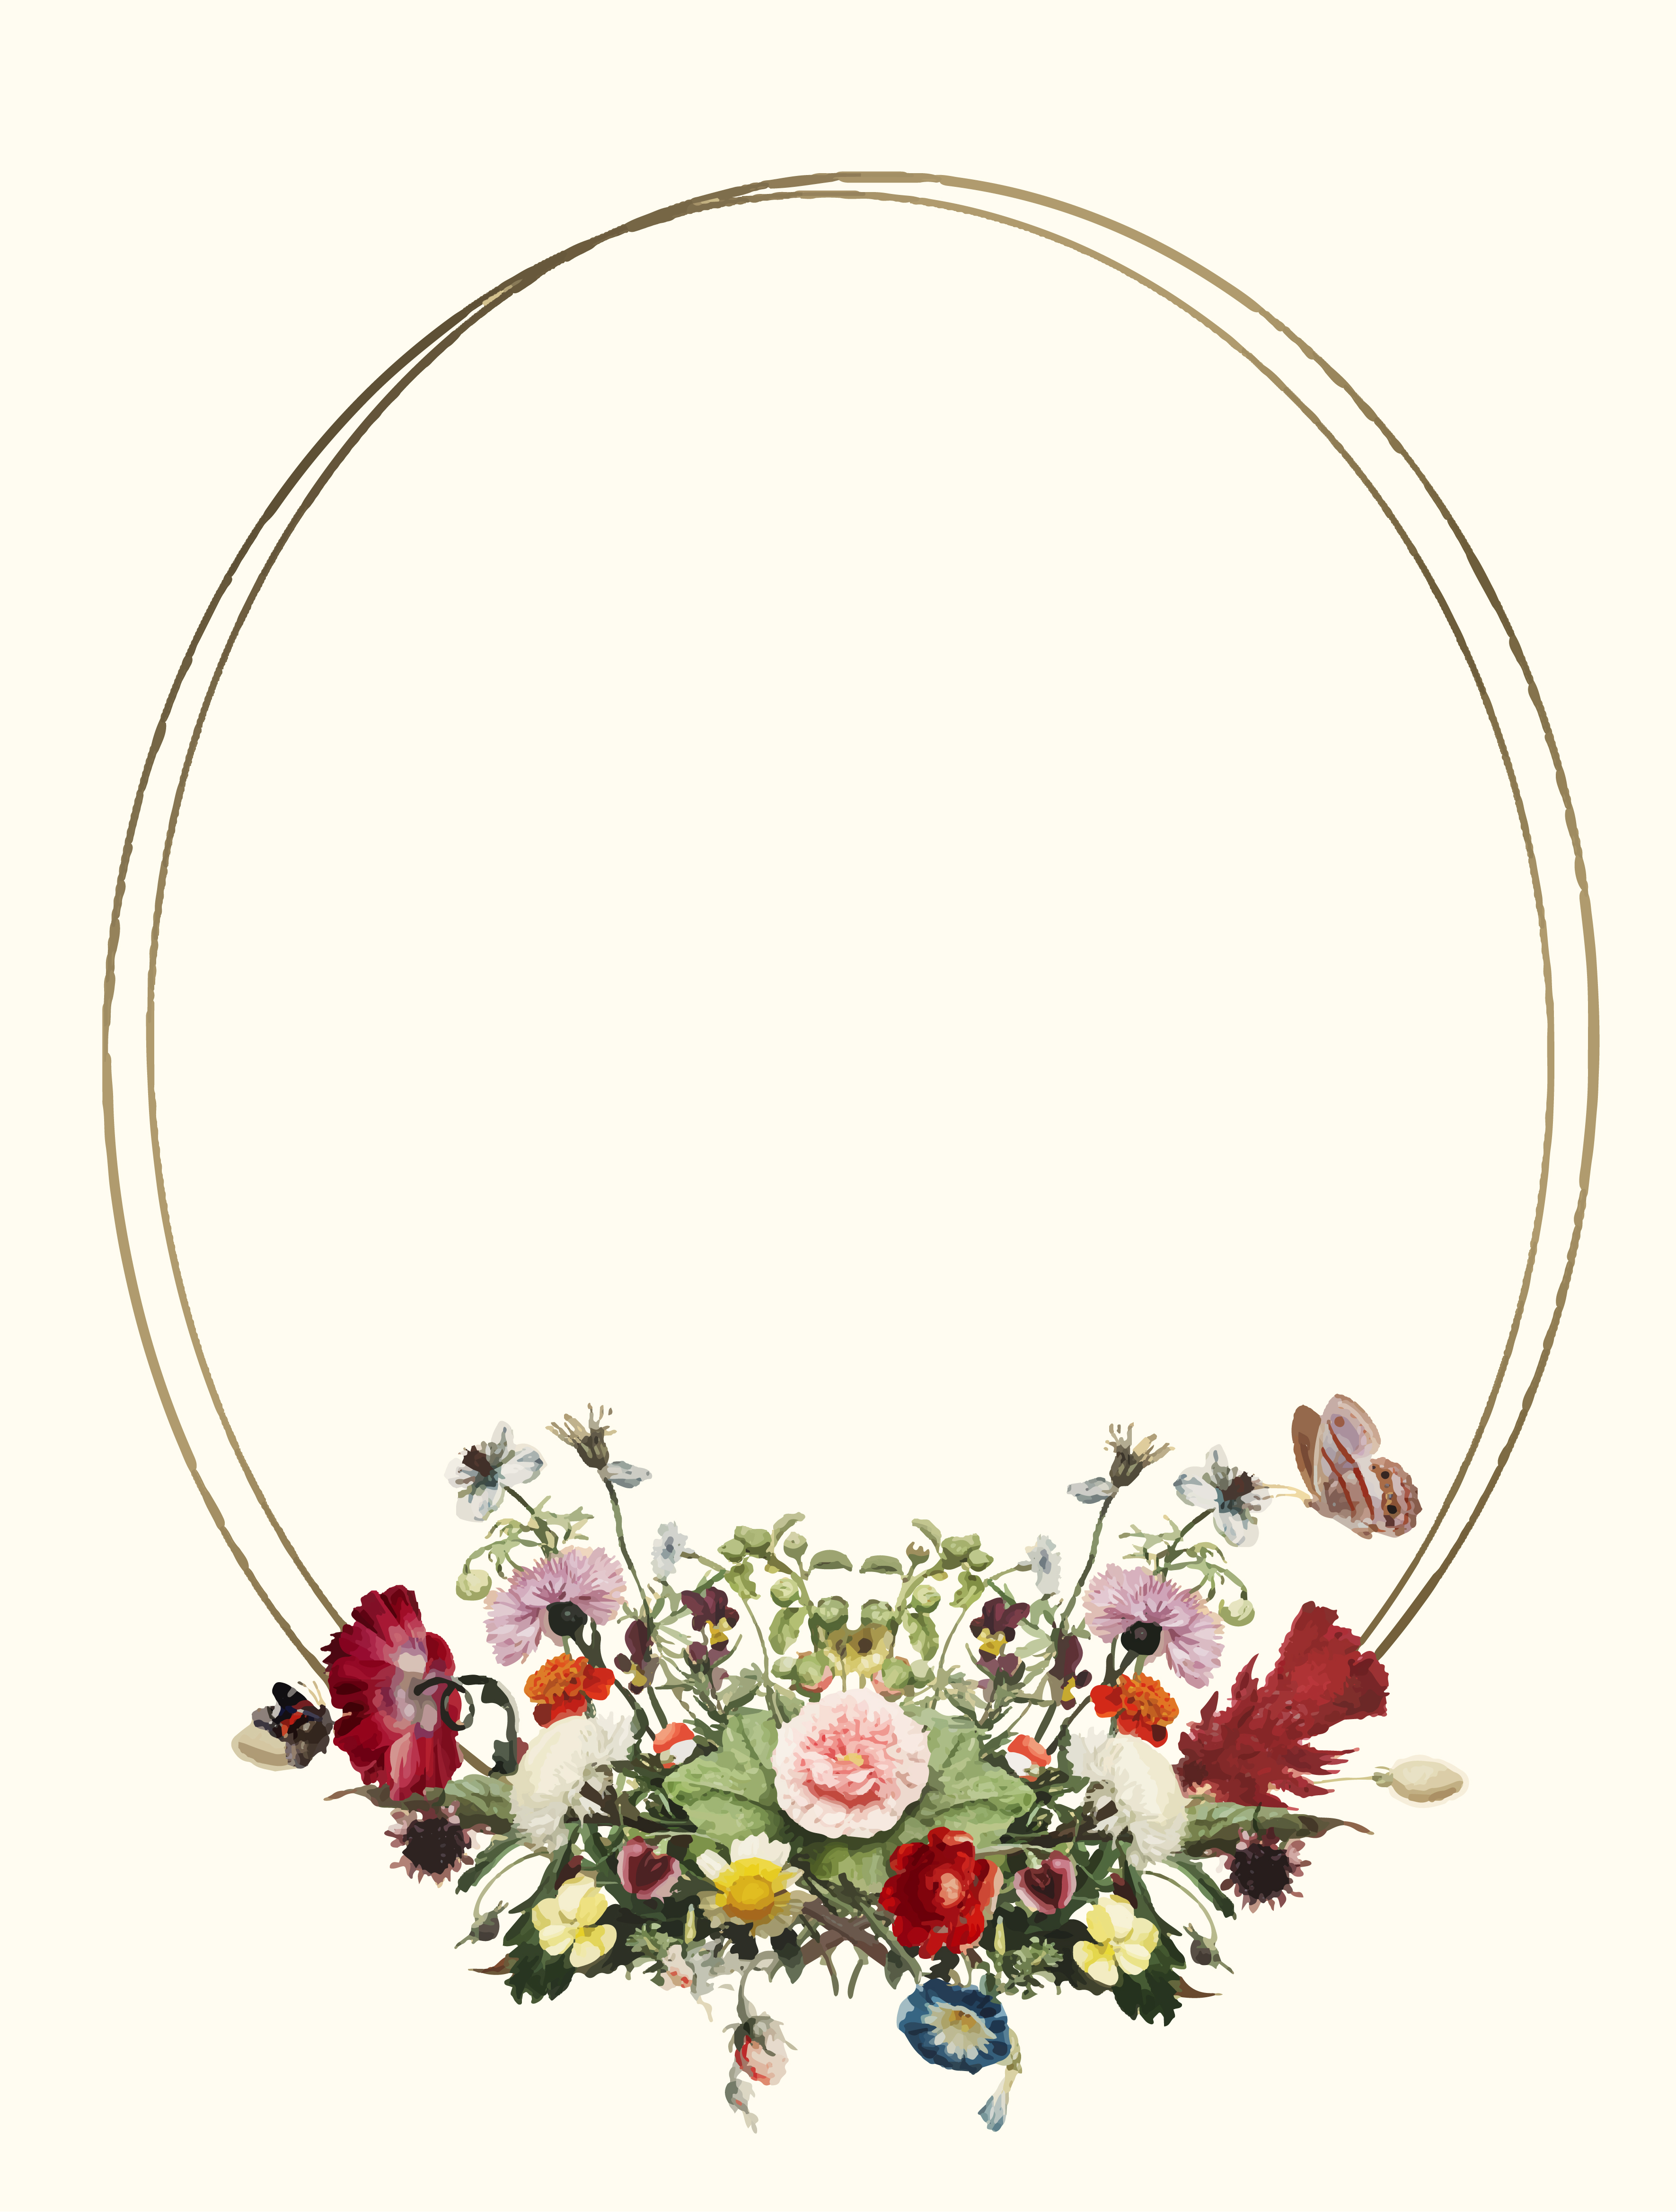 Vintage illustration of Decorative floral frame - Download Free Vectors